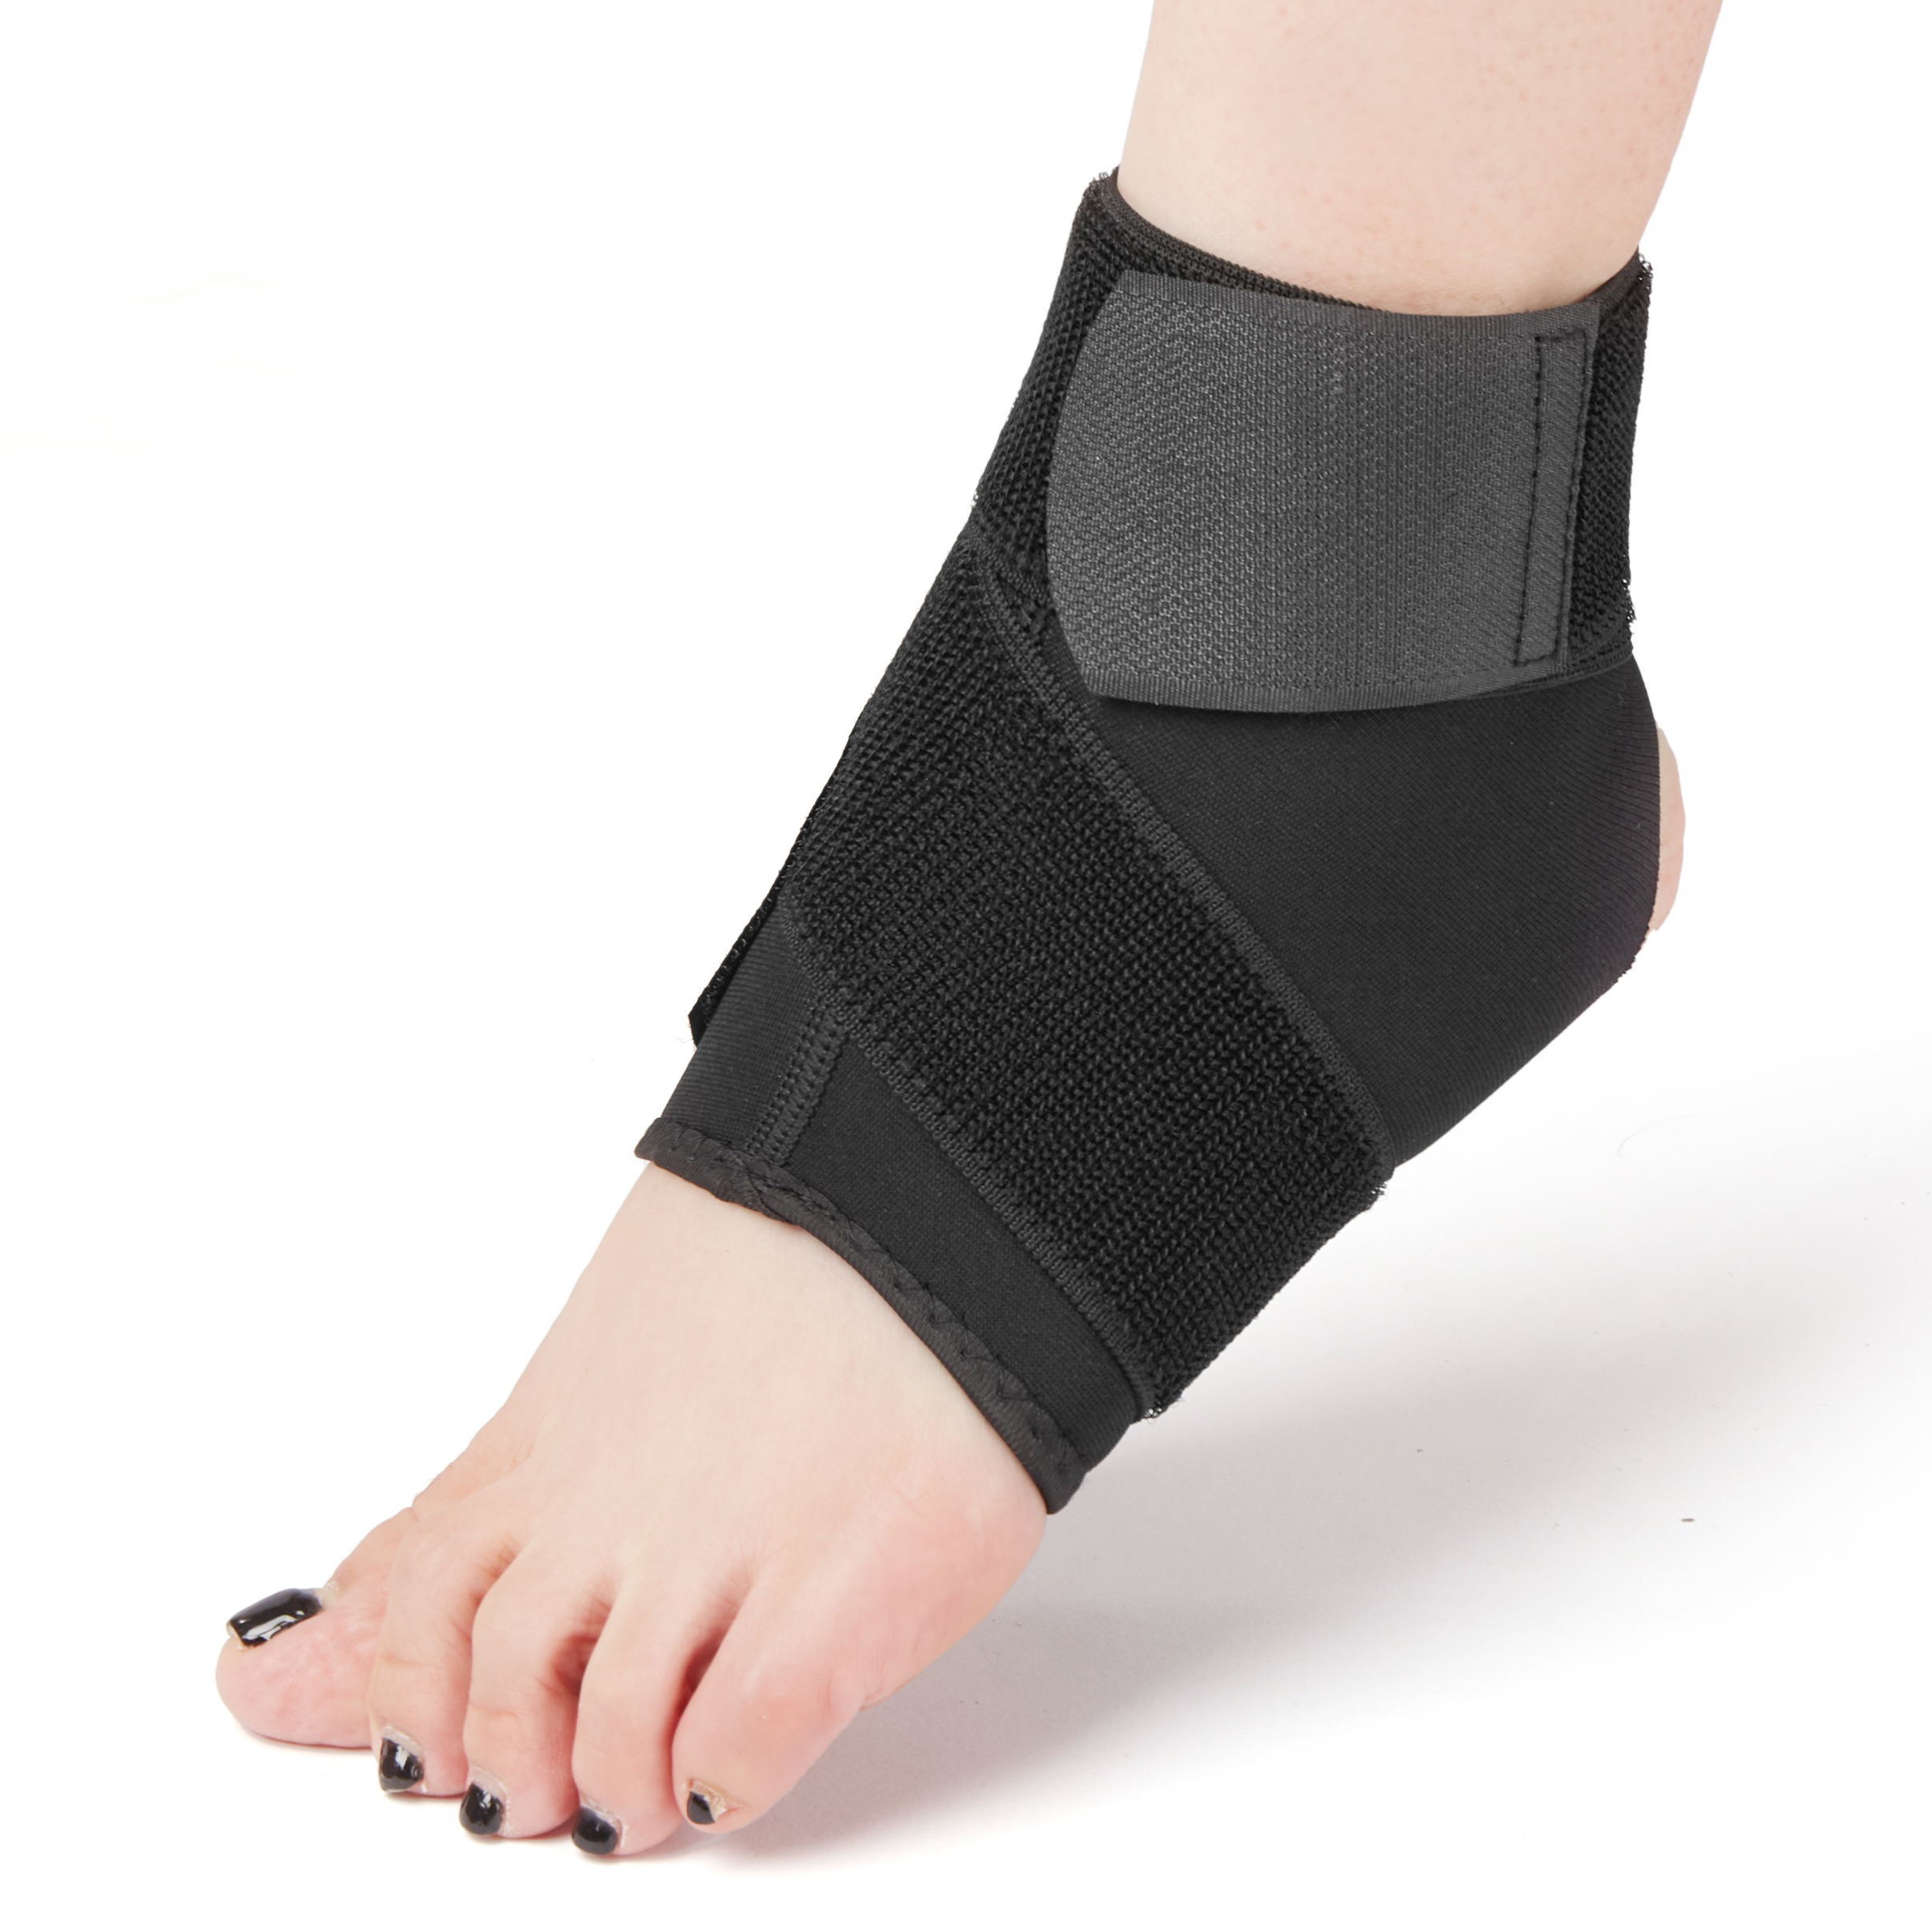 Protezione della caviglia a compressione regolabile in neoprene traspirante